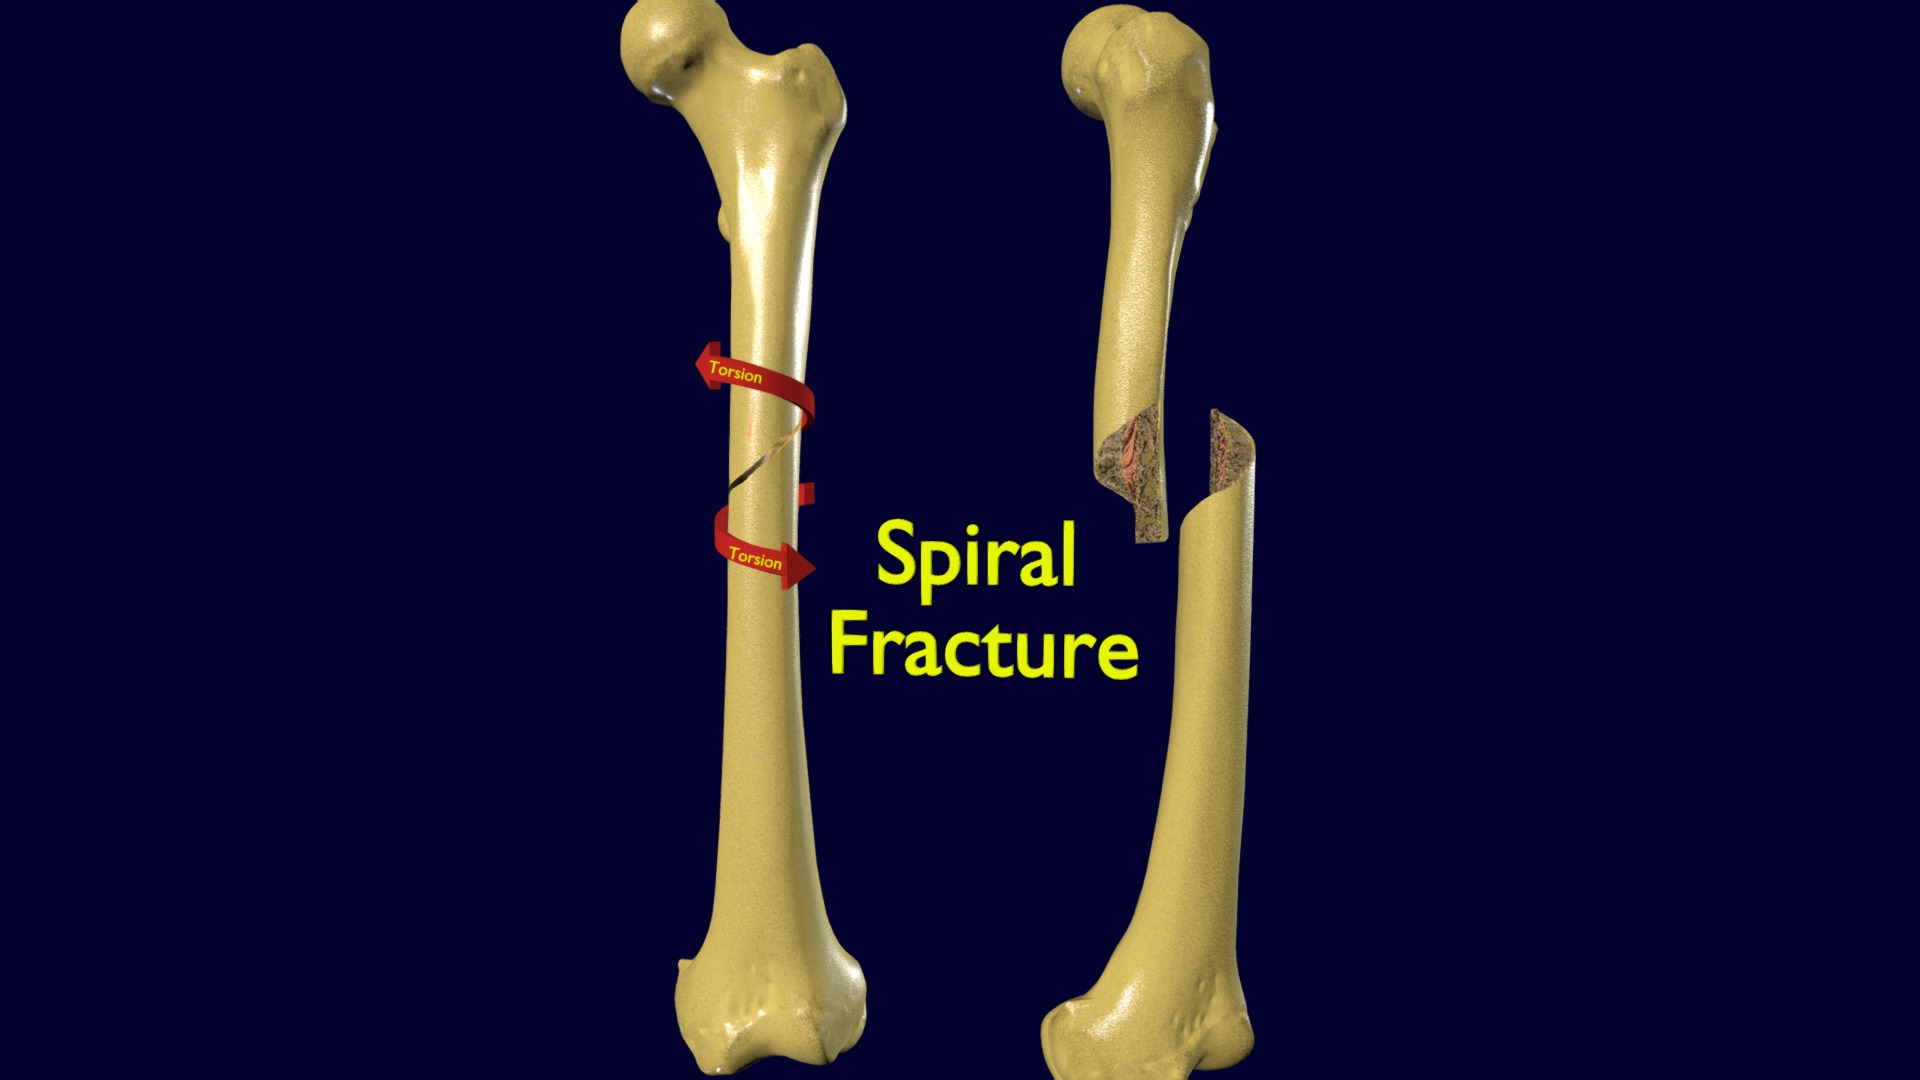 3D model Spiral Fracture skeleton labelled femur - This is a 3D model of the Spiral Fracture skeleton labelled femur. The 3D model is about a pair of bone bones.